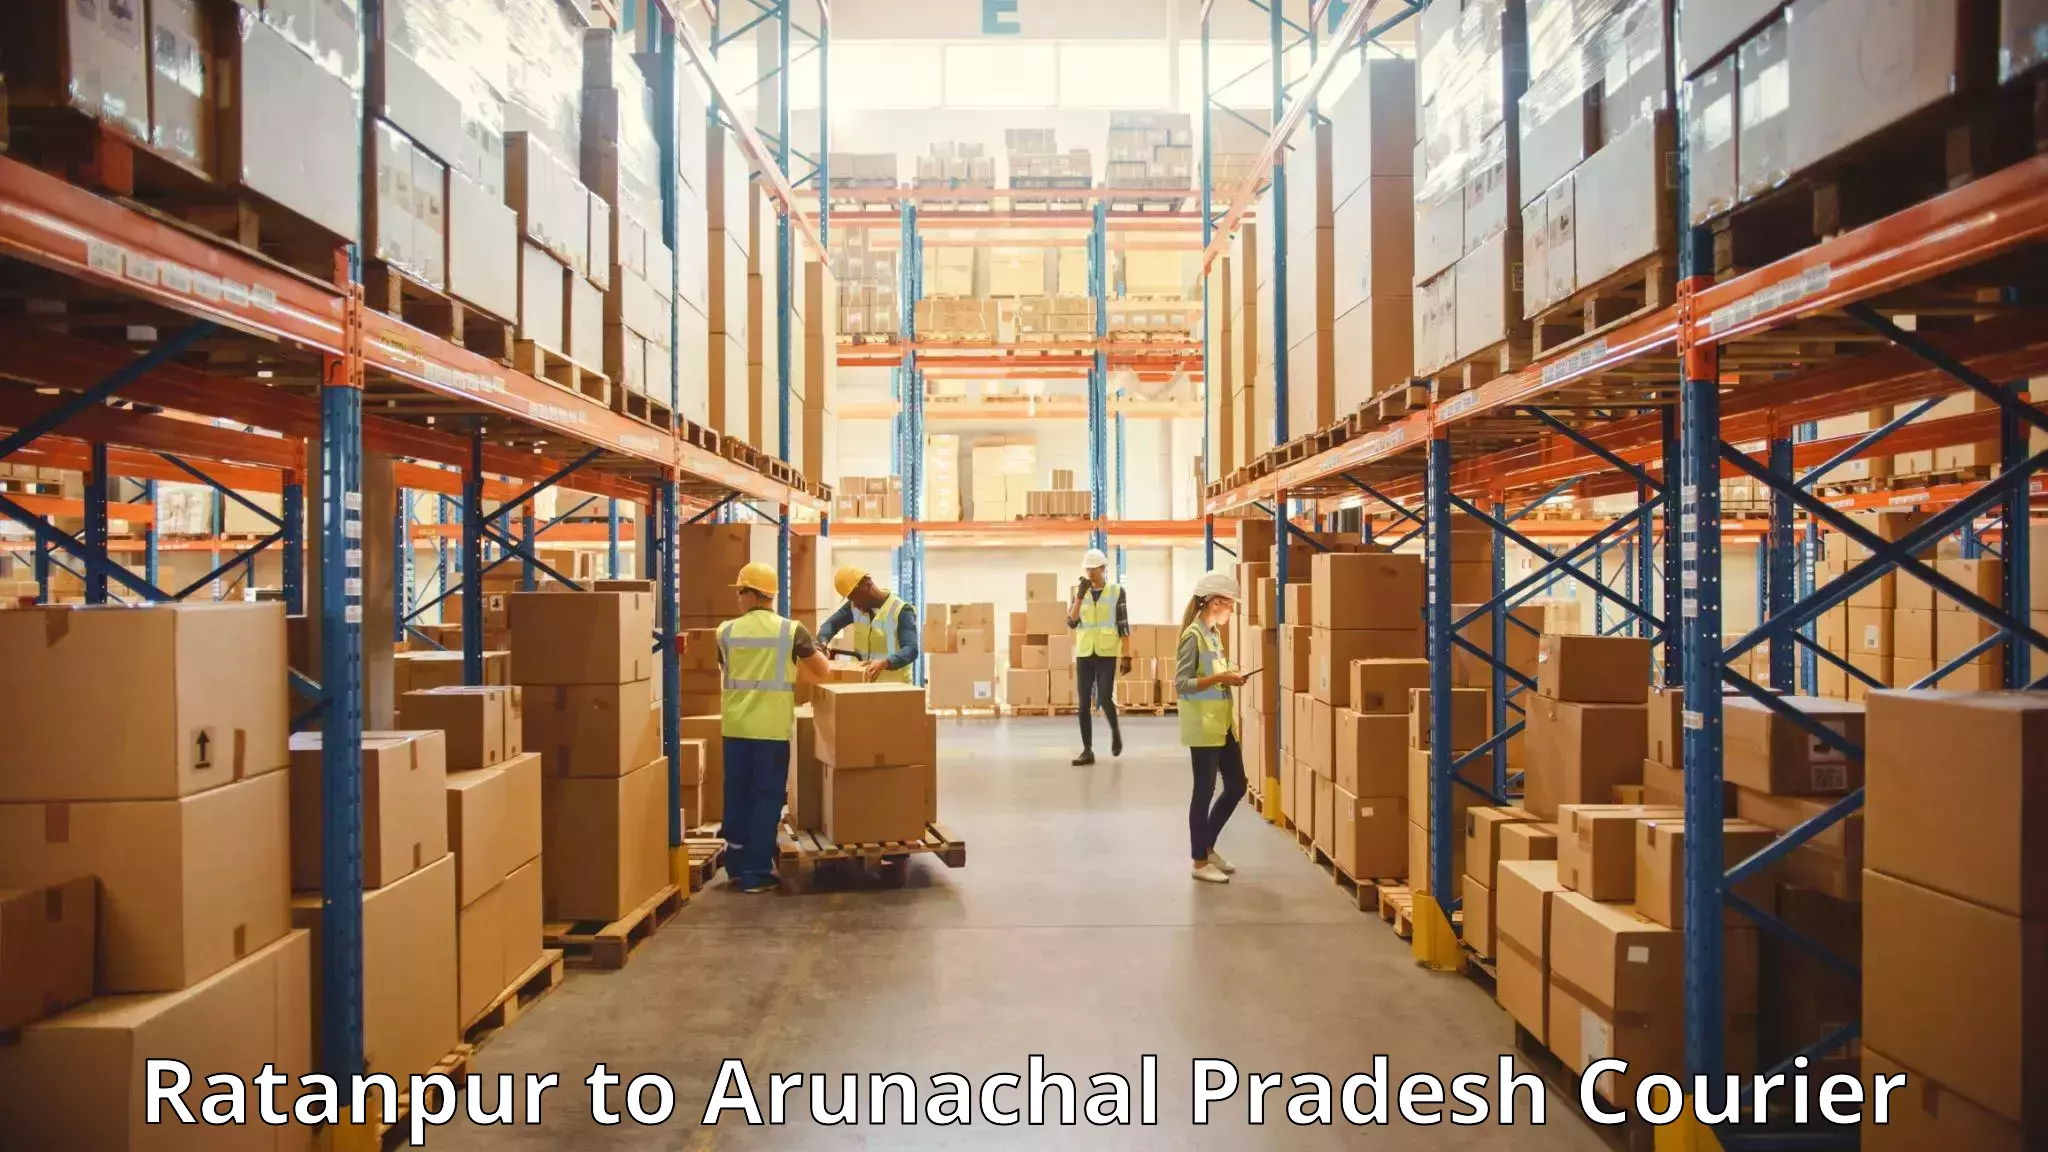 Baggage transport management Ratanpur to Arunachal Pradesh